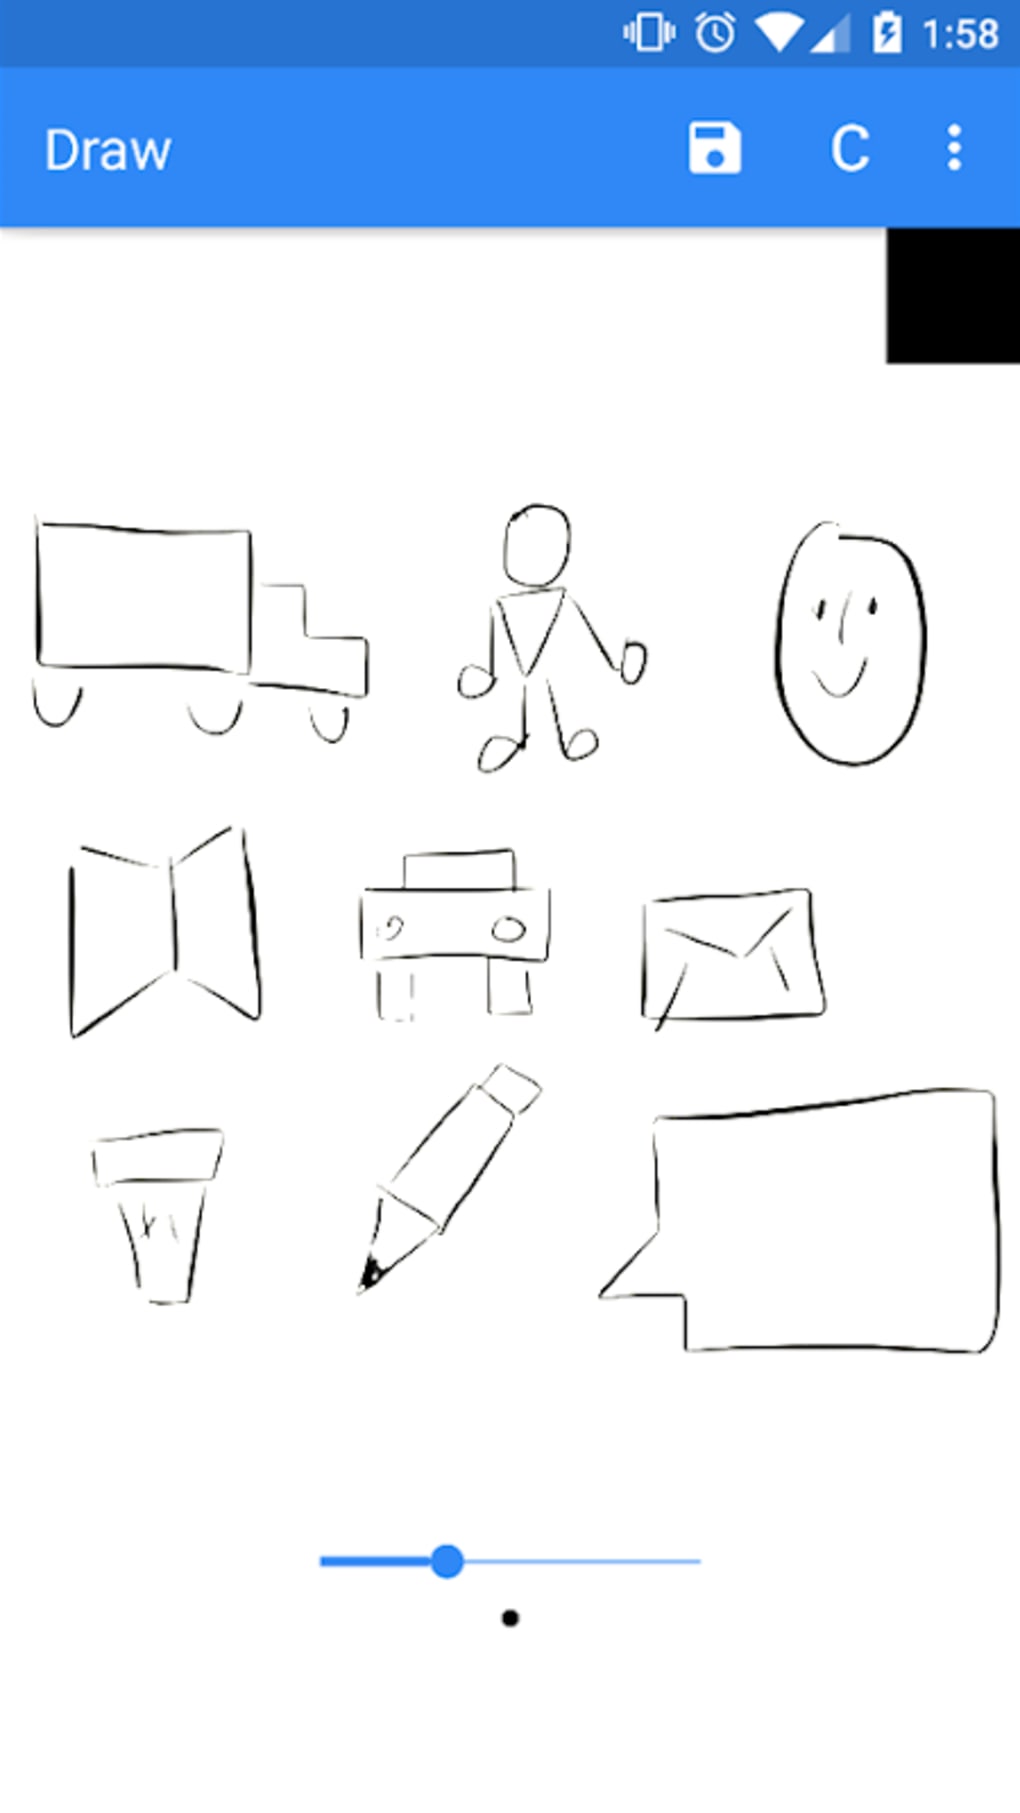 Simple draw приложение. Easy draw приложение. Quick draw. Quick draw logo. Draw на андроид рисовать обоях